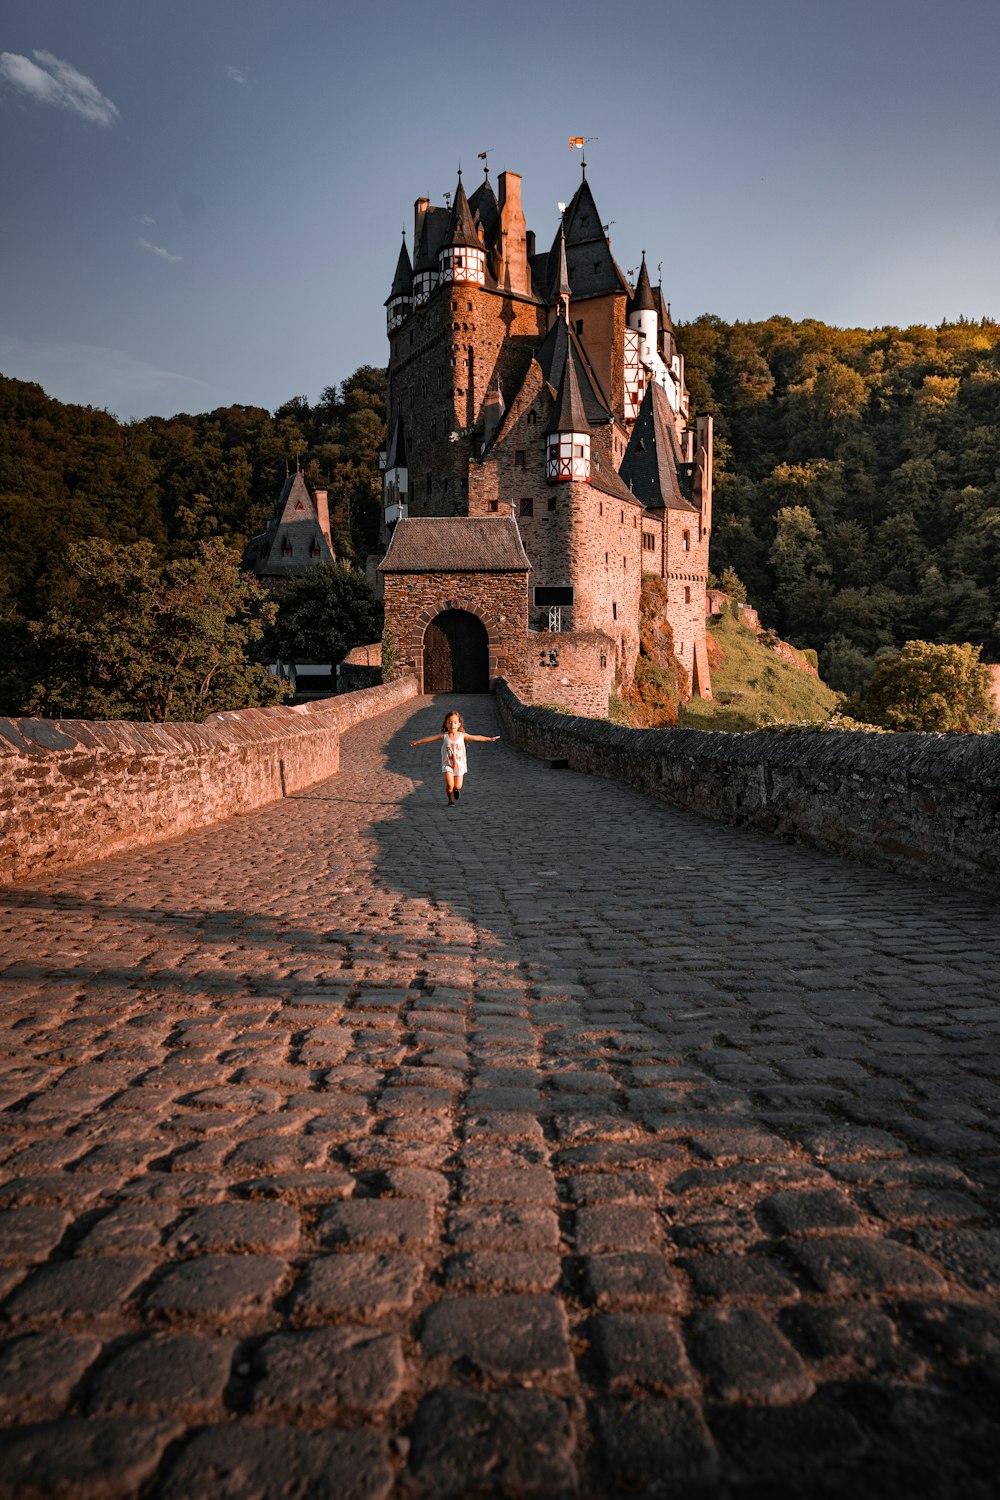 Une personne marchant sur une route pavée devant un château